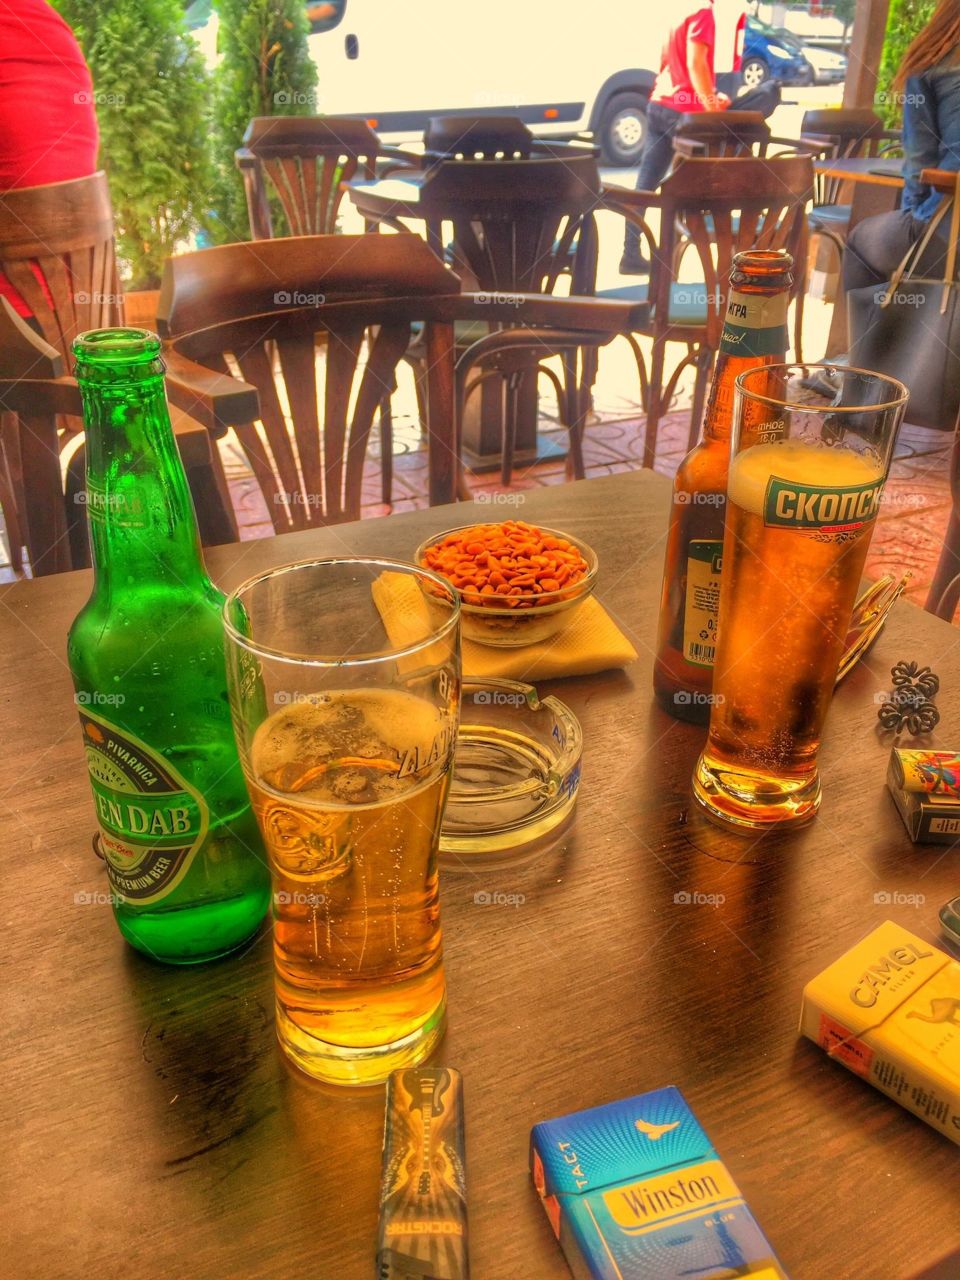 #macedonia #beer #skopsko #peanut